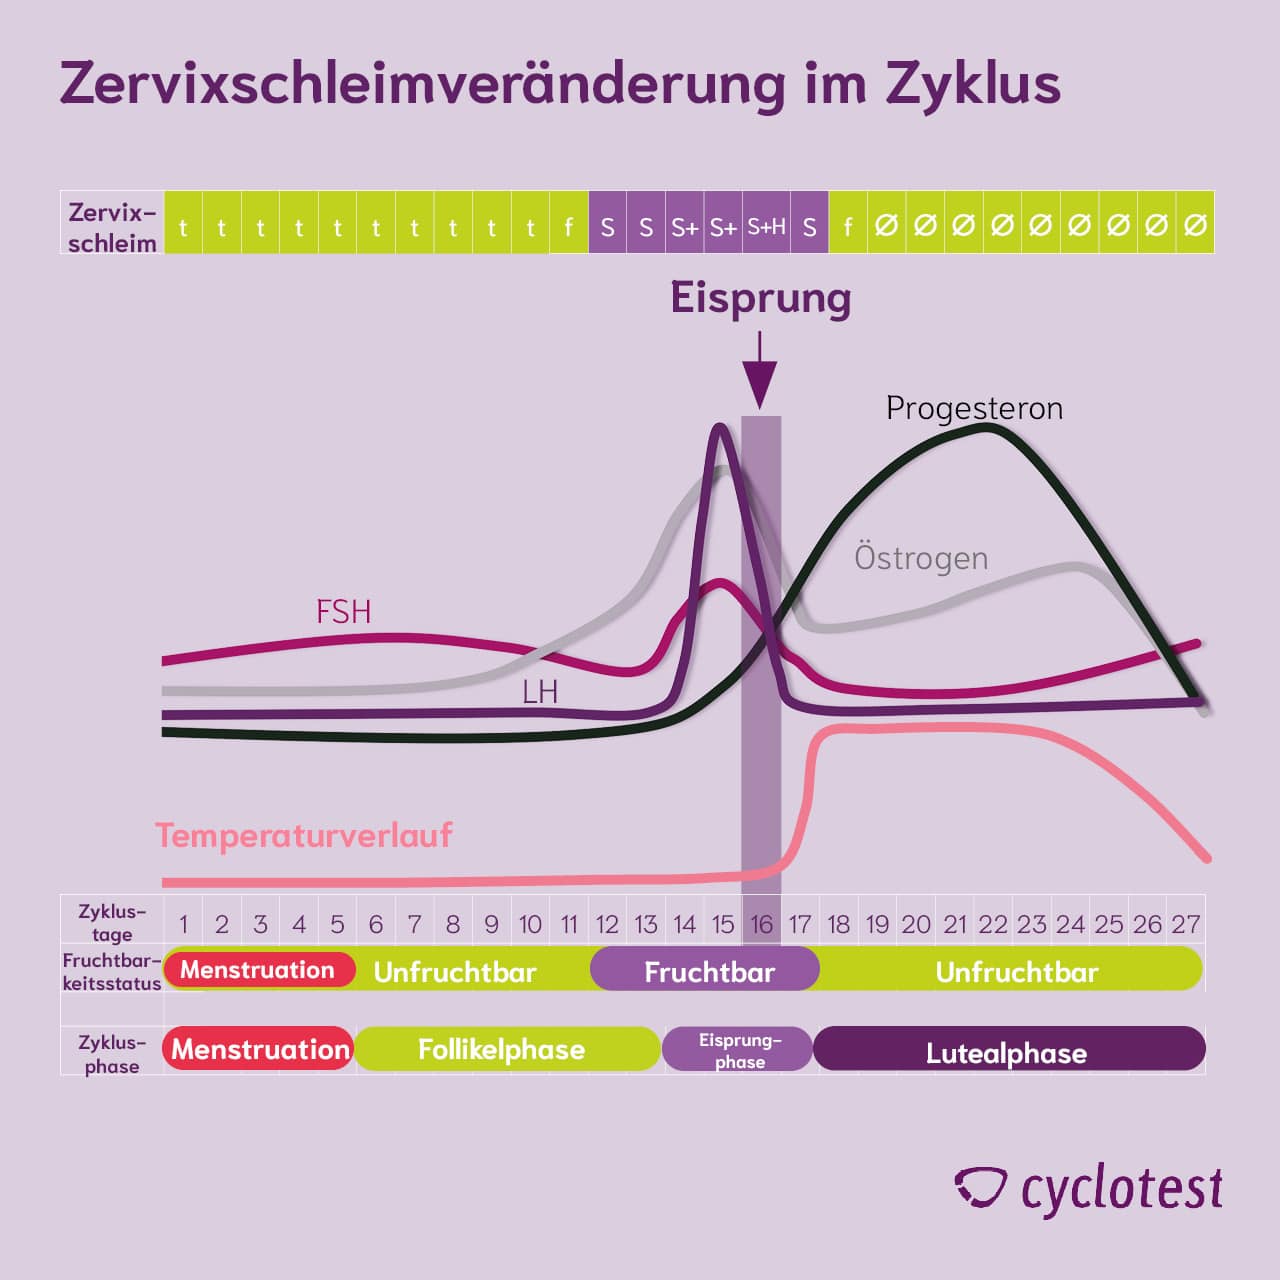 Zervixschleimveränderung im Zyklus durch Progesteron und Östrogen